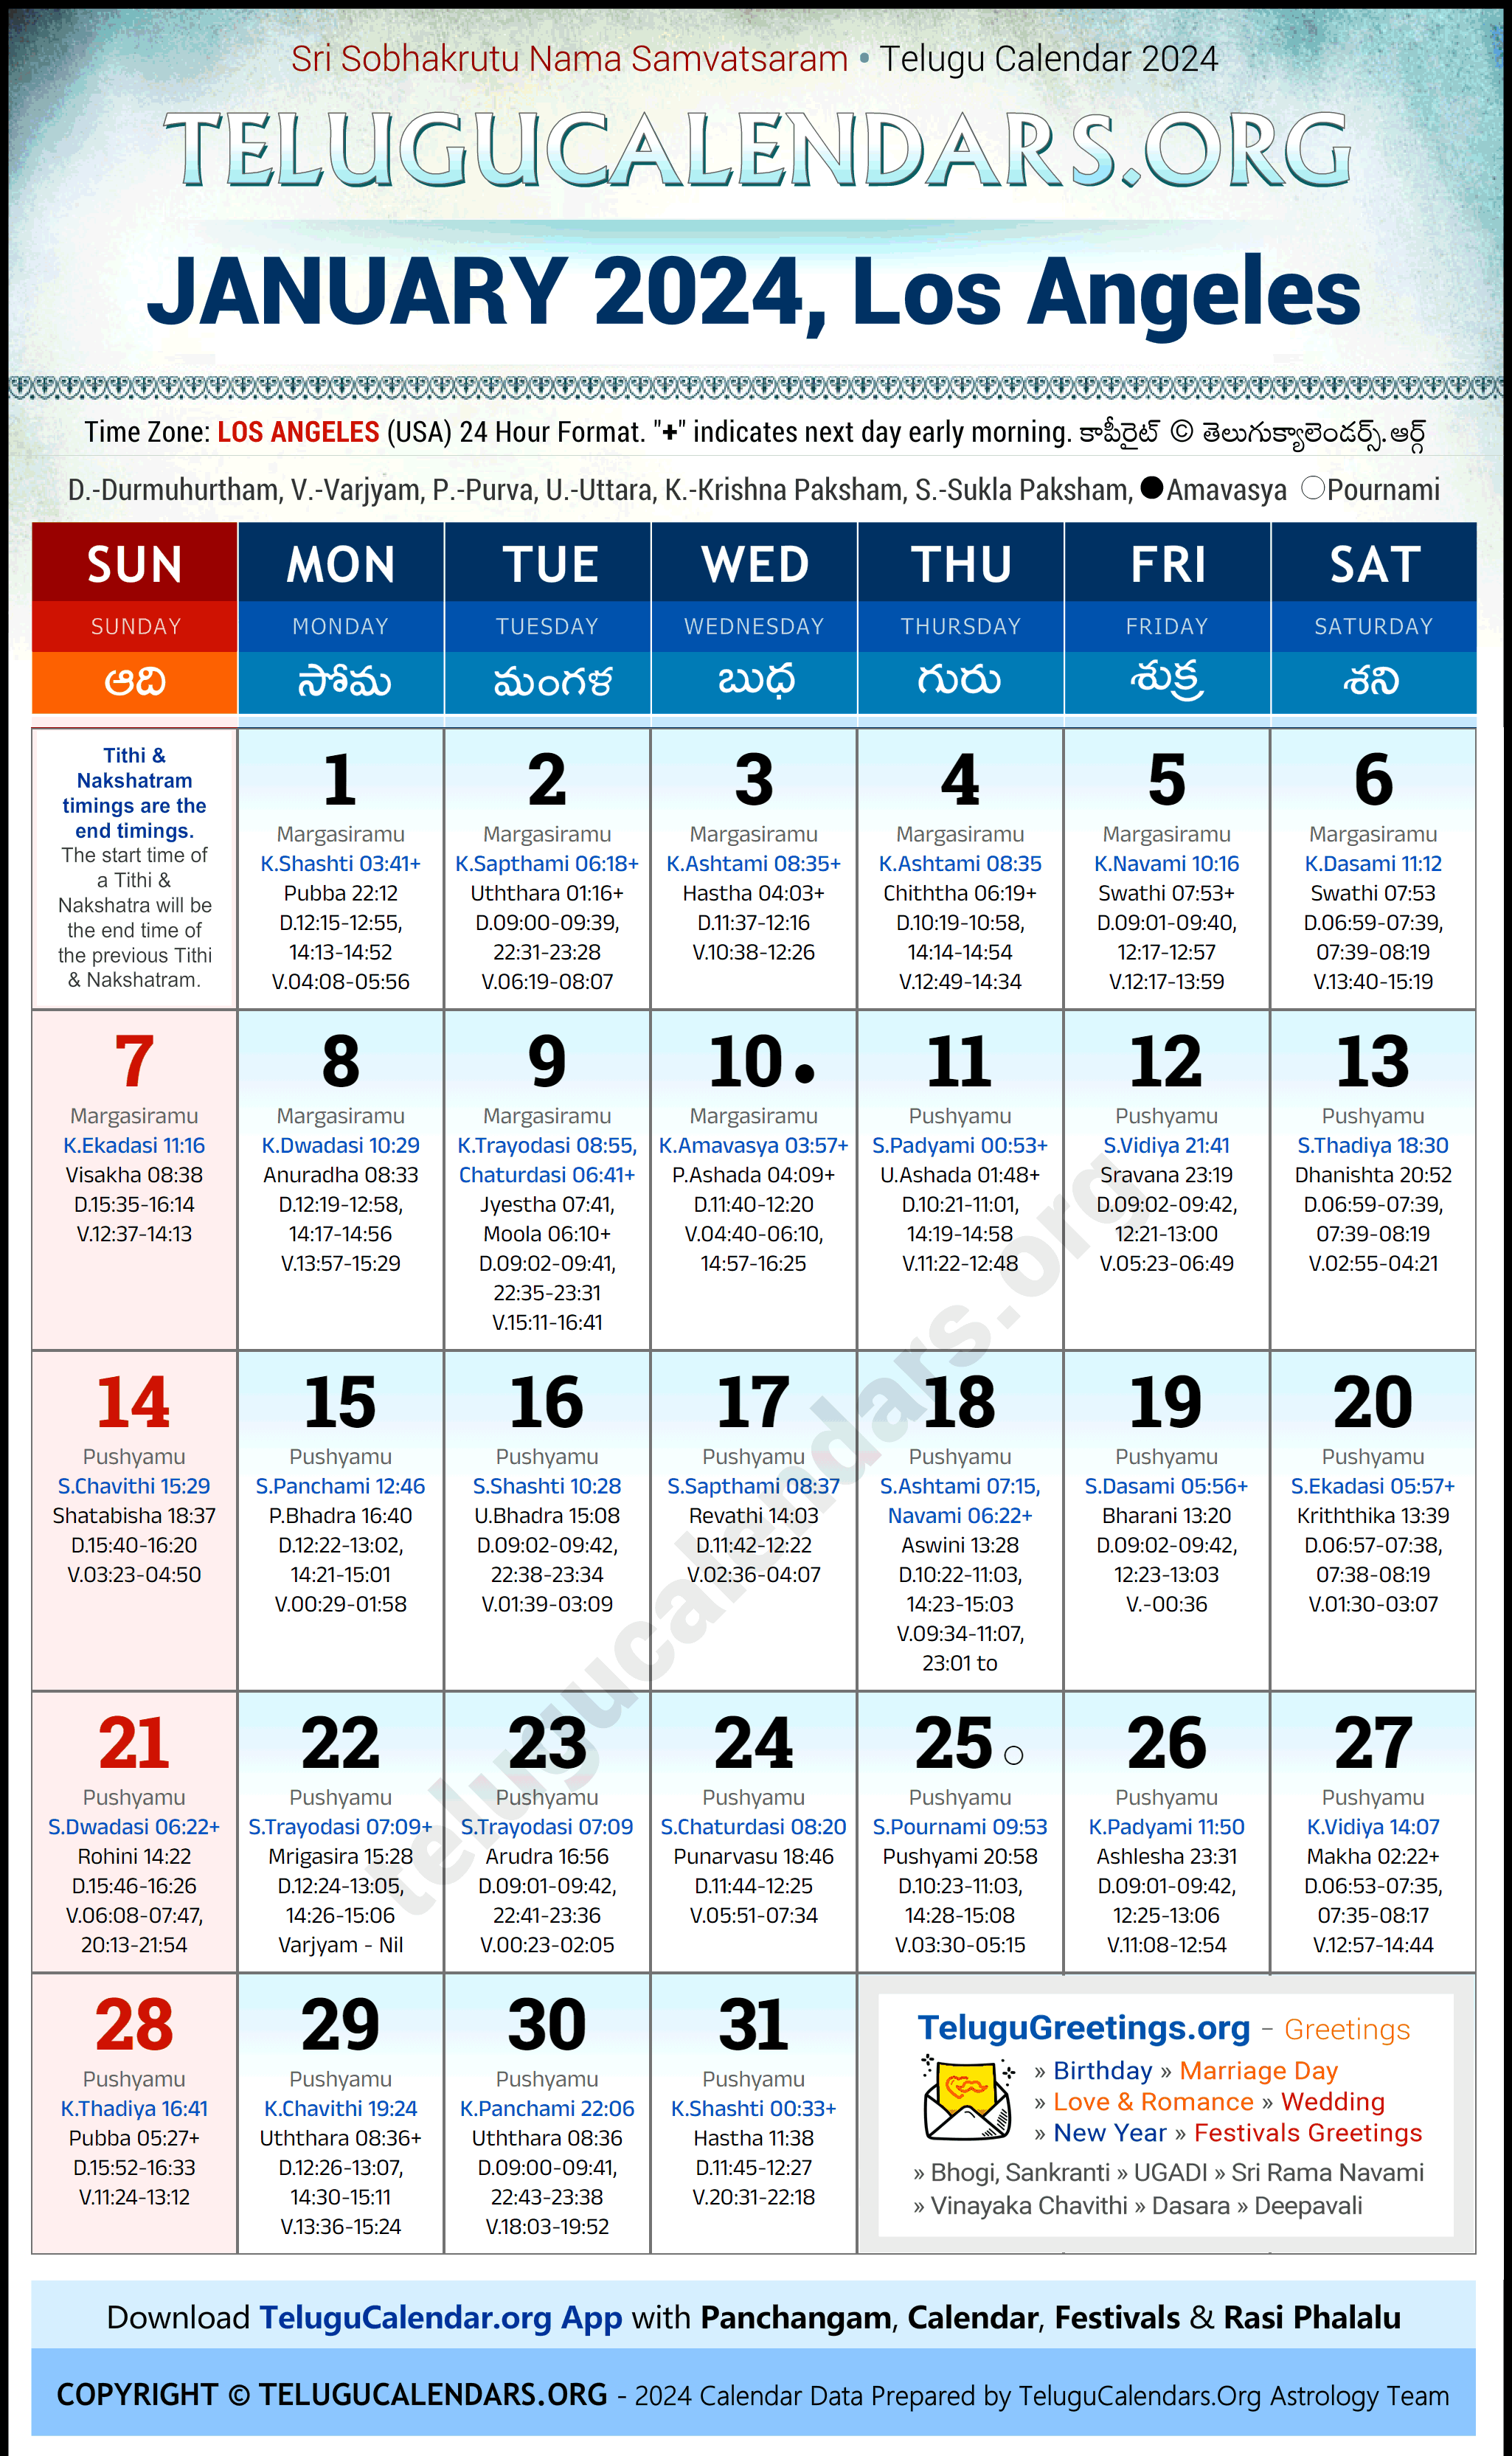 Telugu Calendar 2024 January Festivals for Los Angeles